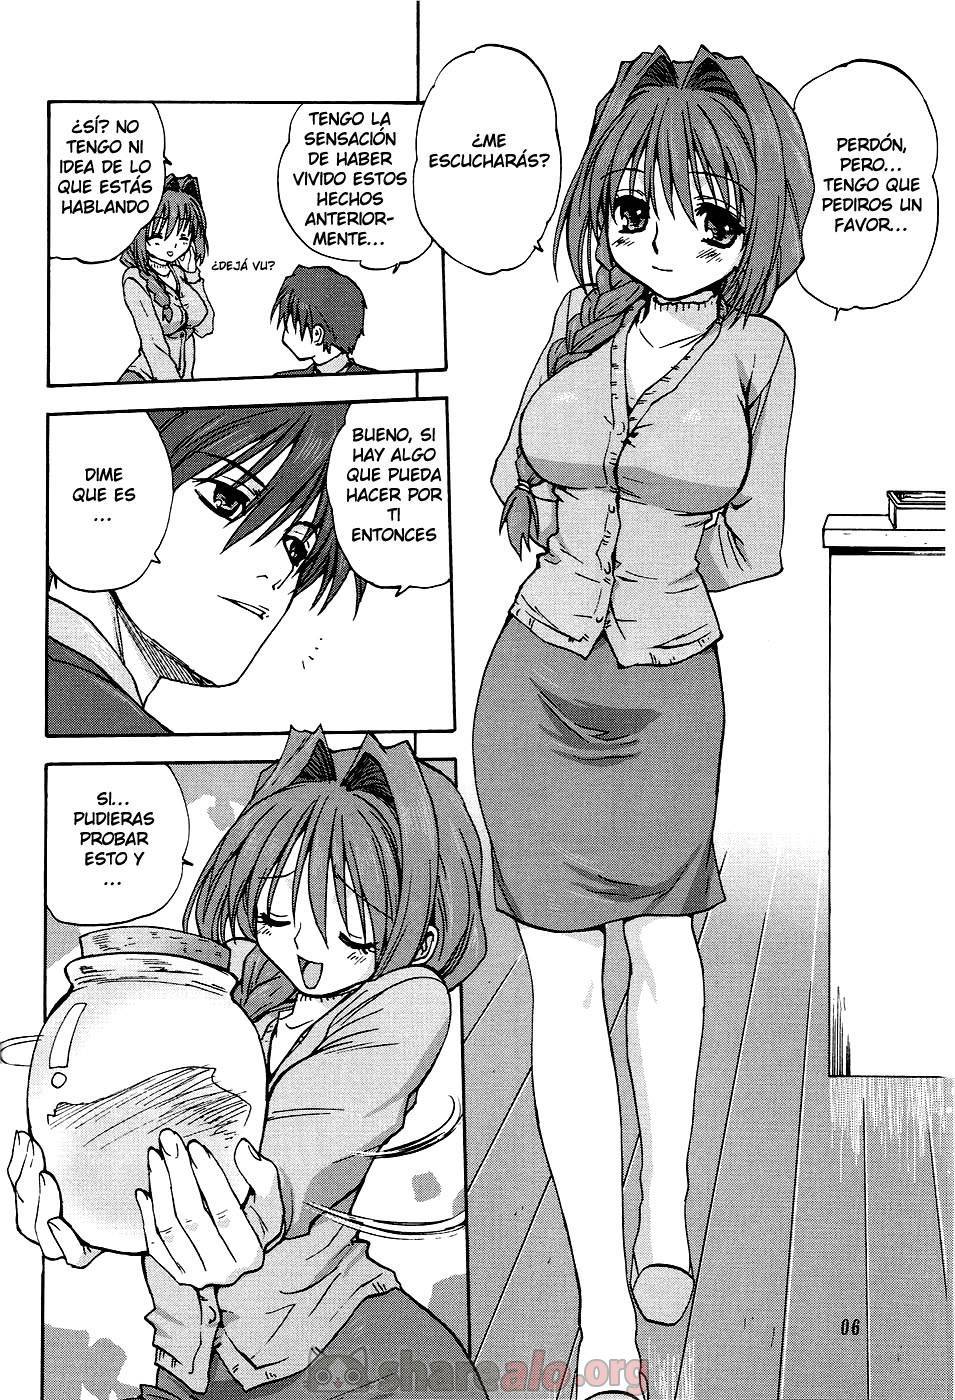 Akiko-san to Issho (Kanon XXX) - 7 - Comics Porno - Hentai Manga - Cartoon XXX